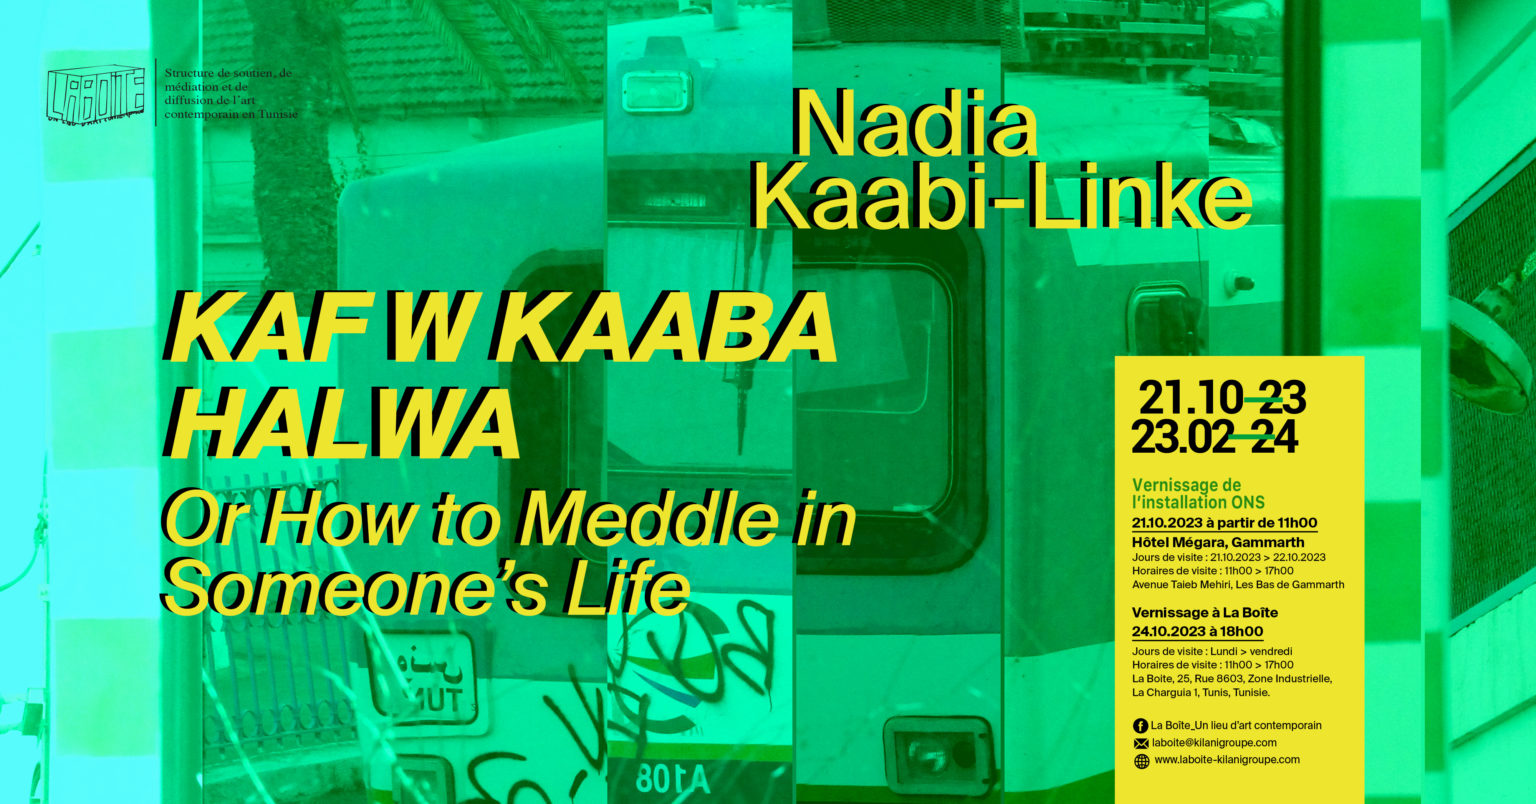 Exhibition "KAF W KAABA HALWA" by Nadia Kaabi-Linke